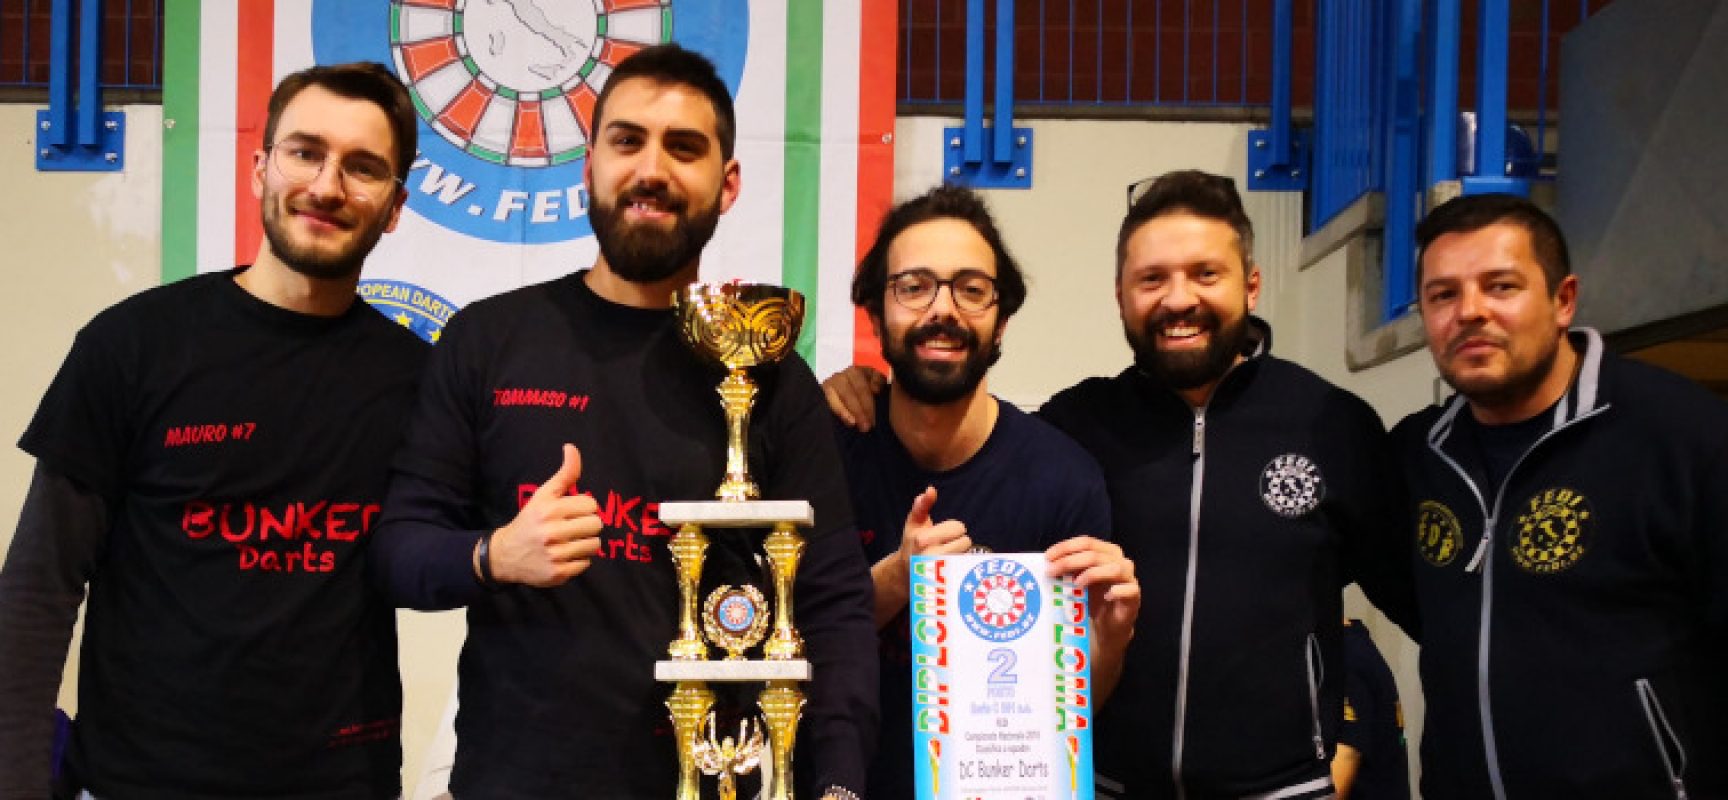 Soft Dart, l’Apulia Golden Dart si laurea vicecampione d’Italia con il Team Bunker Dart